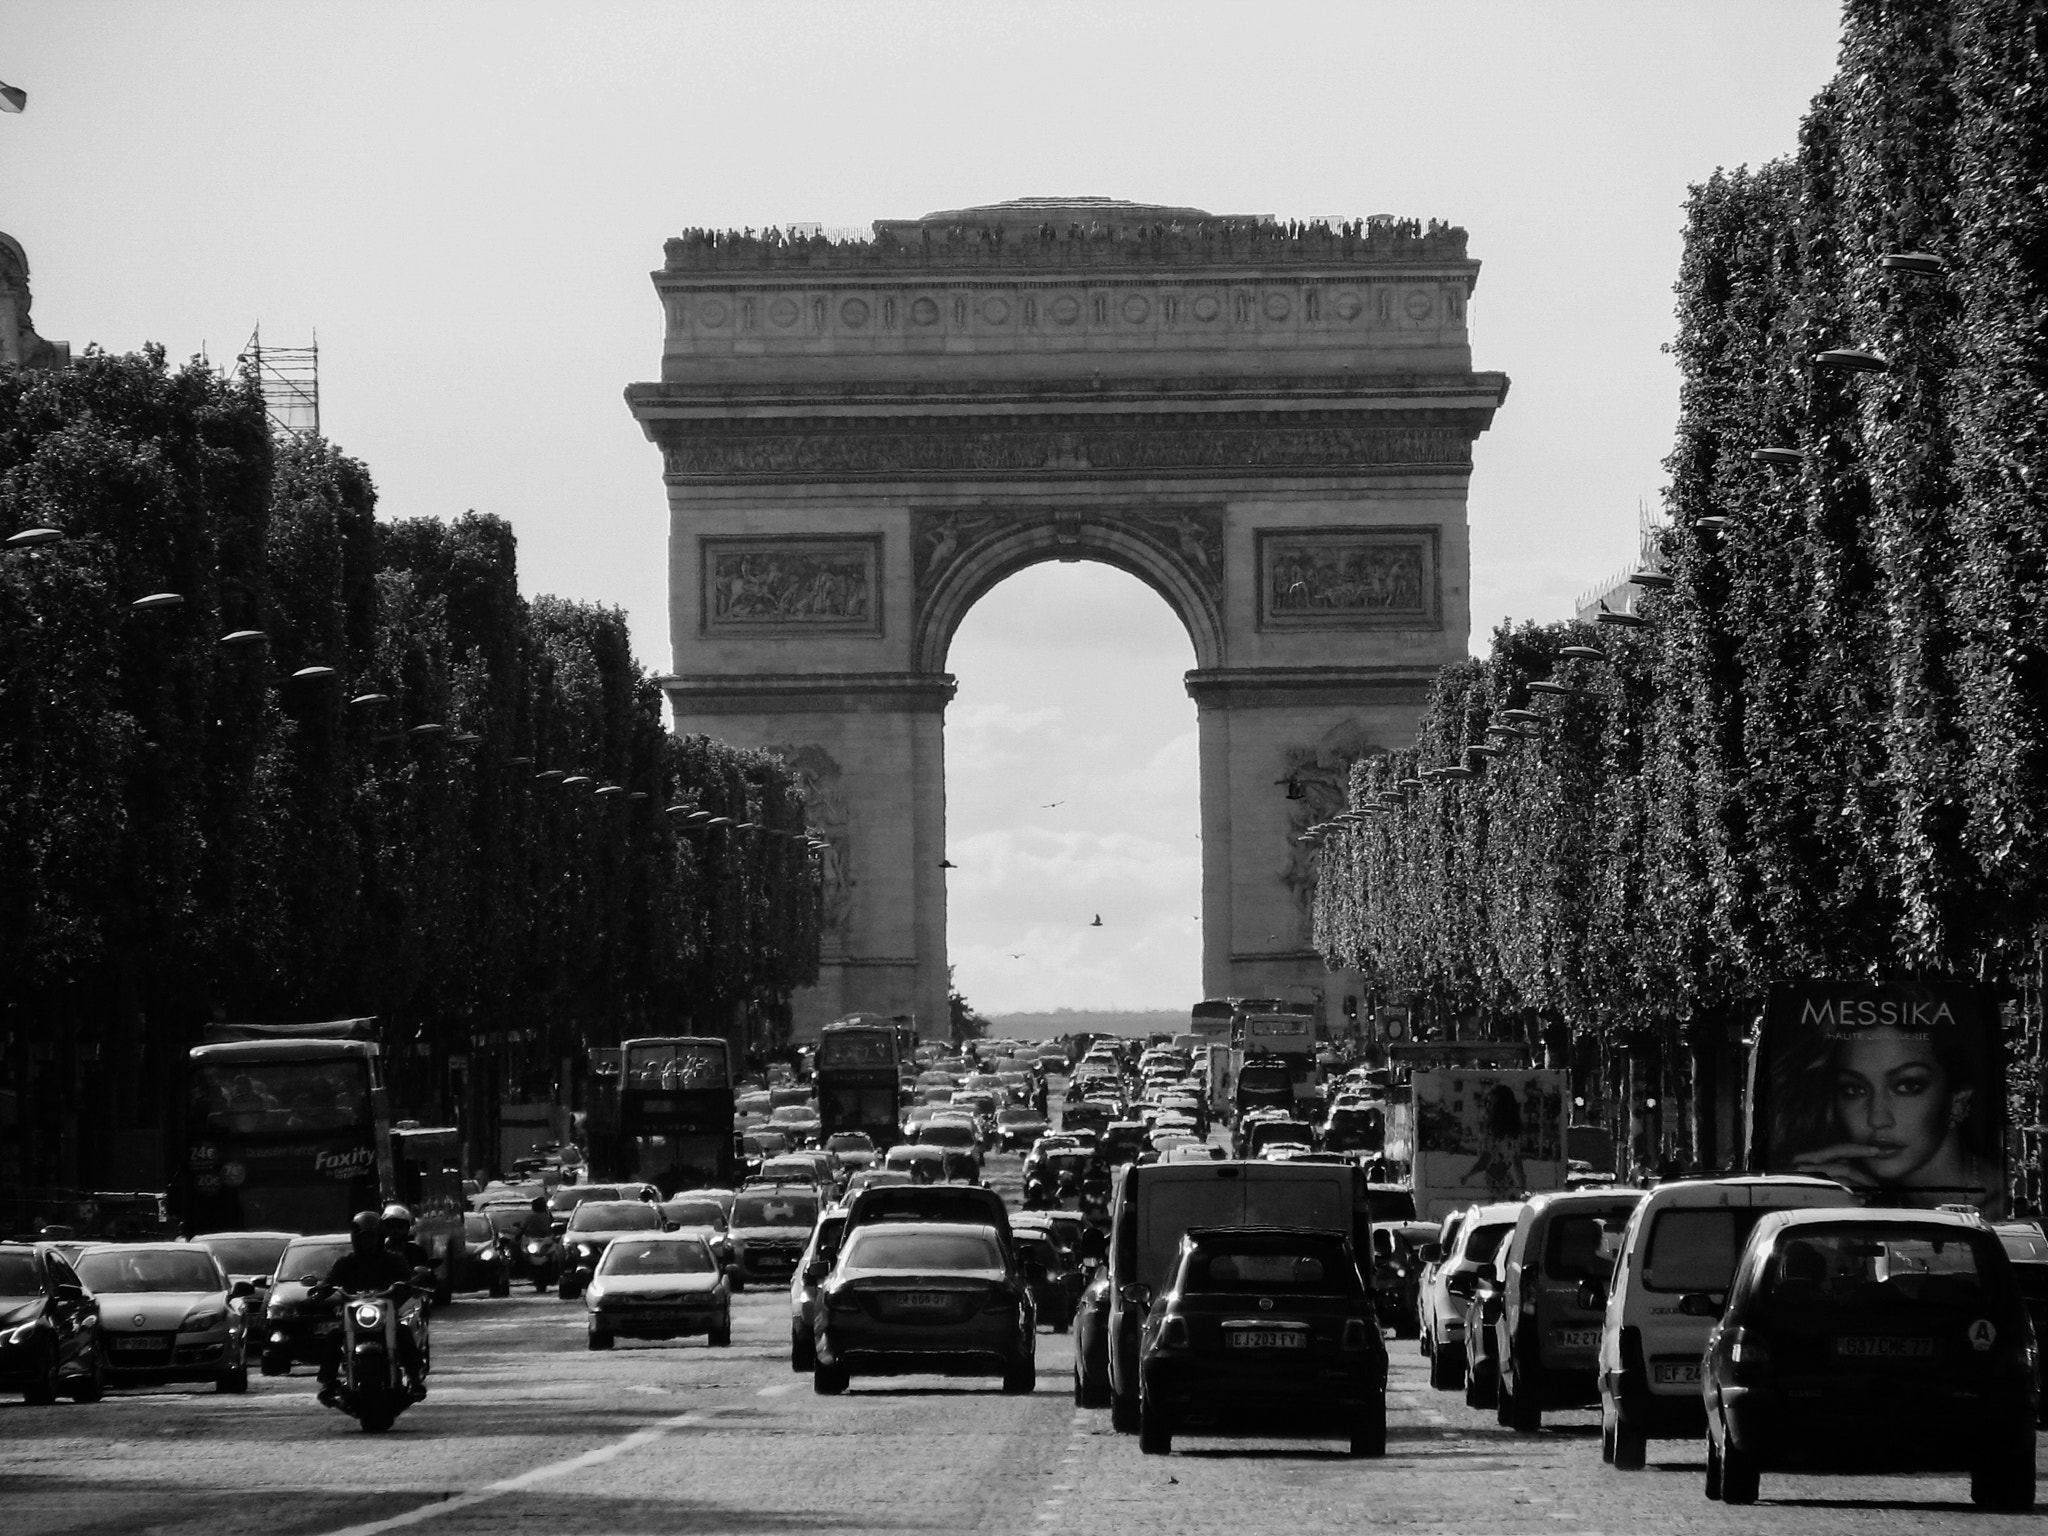 Canon POWERSHOT S3 IS sample photo. Triumphal arch, paris photography